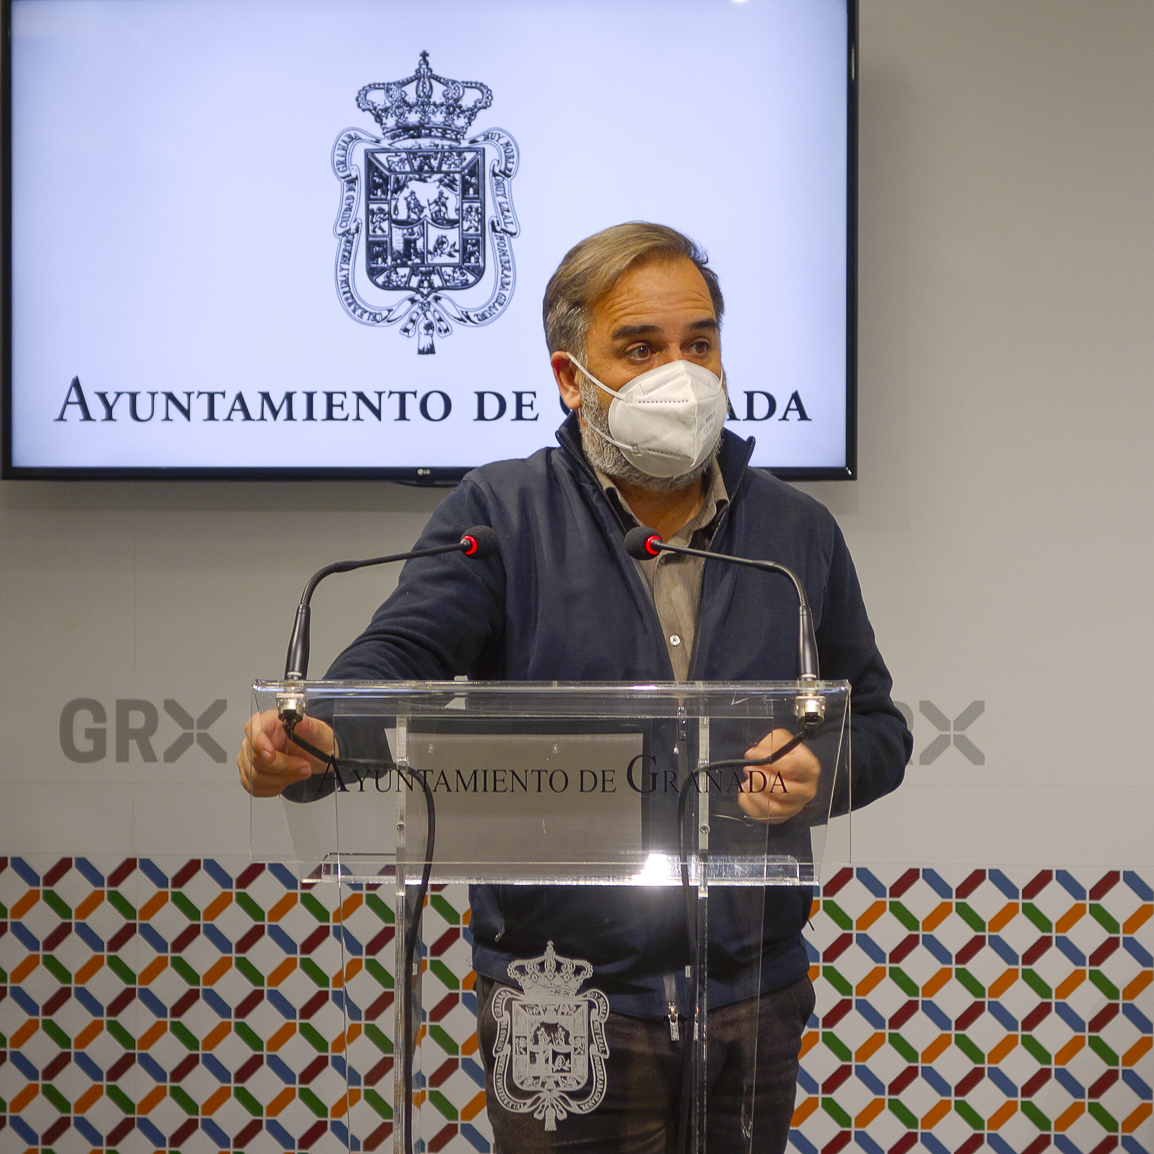 Ayuntamiento y UGR ultiman un proyecto para implicar a la ciudadanía en hábitos saludables frente a la pandemia